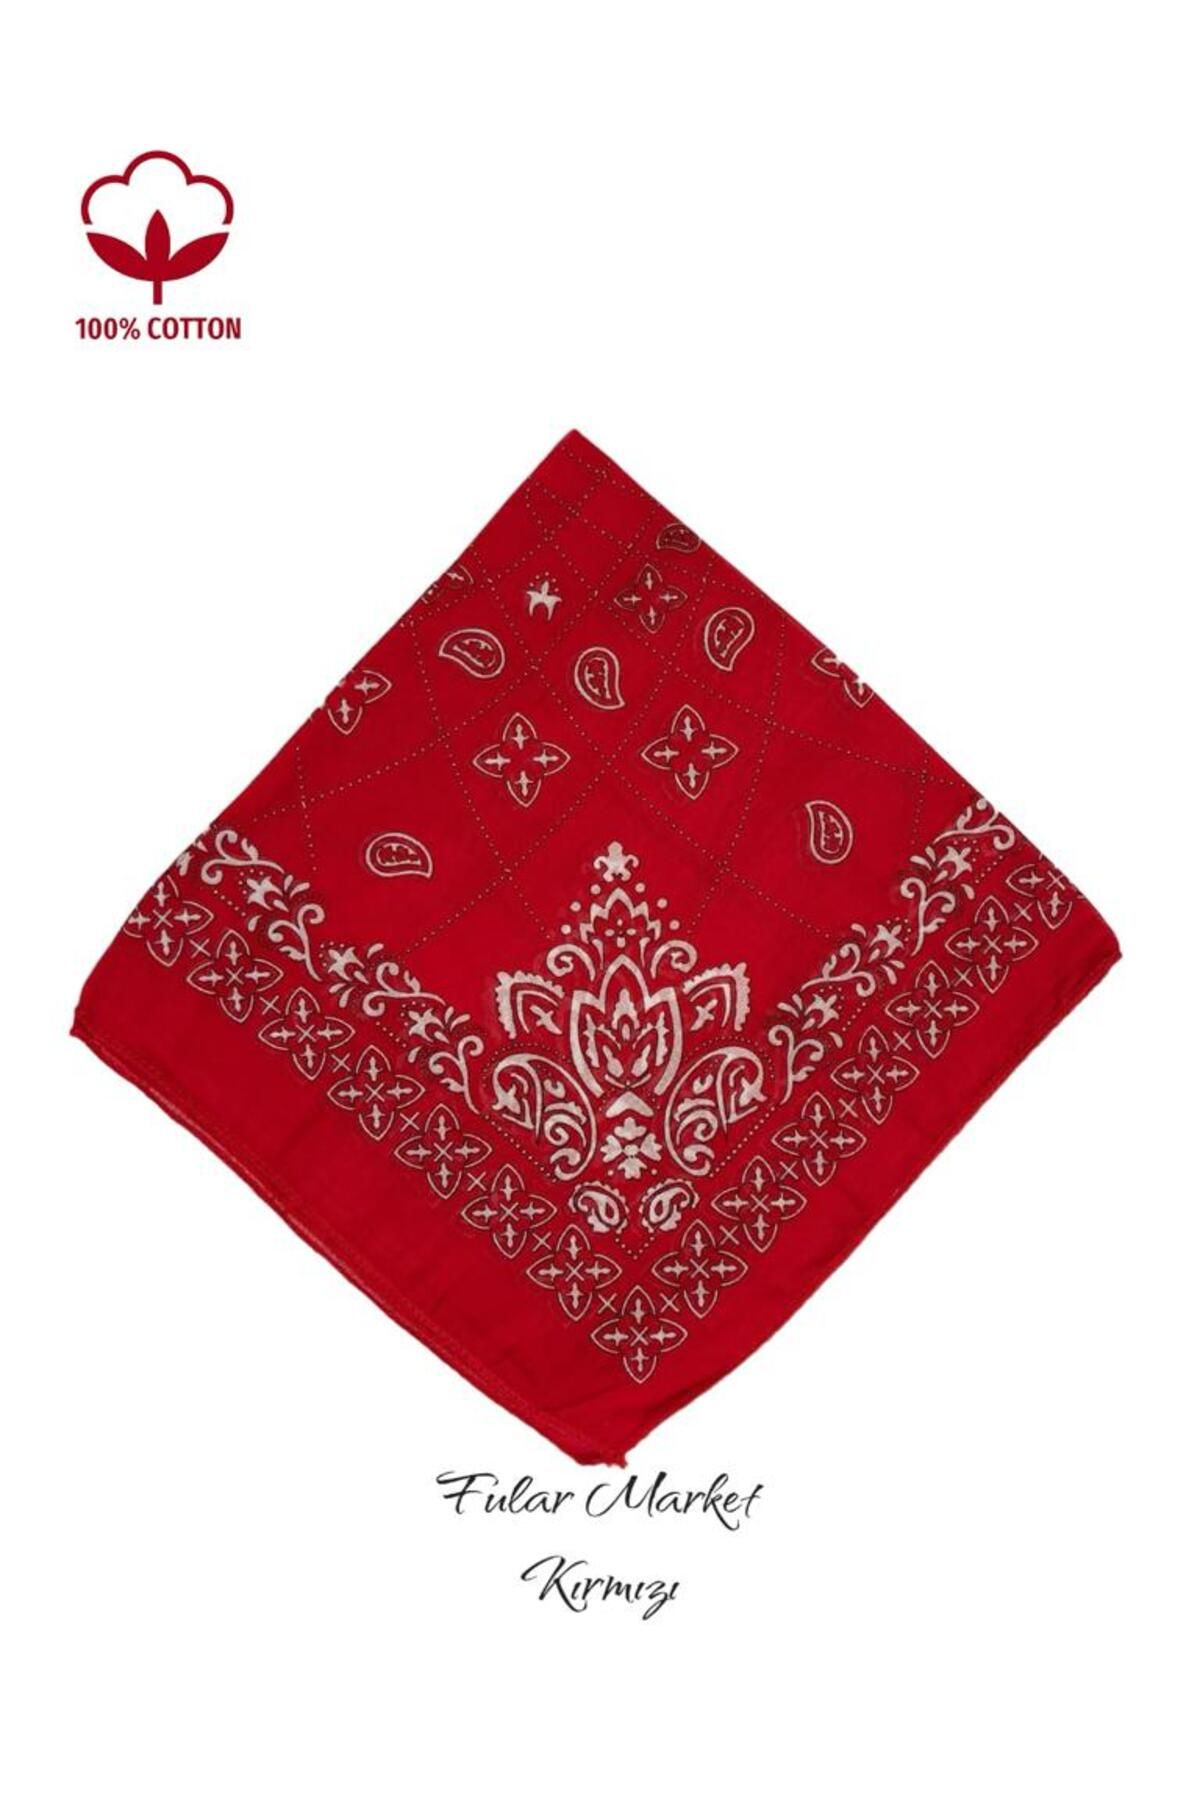 Fular Marketi 5 Al 4 Öde %100 Pamuk Elegance Modeli Bandana kırmızı bandanabone